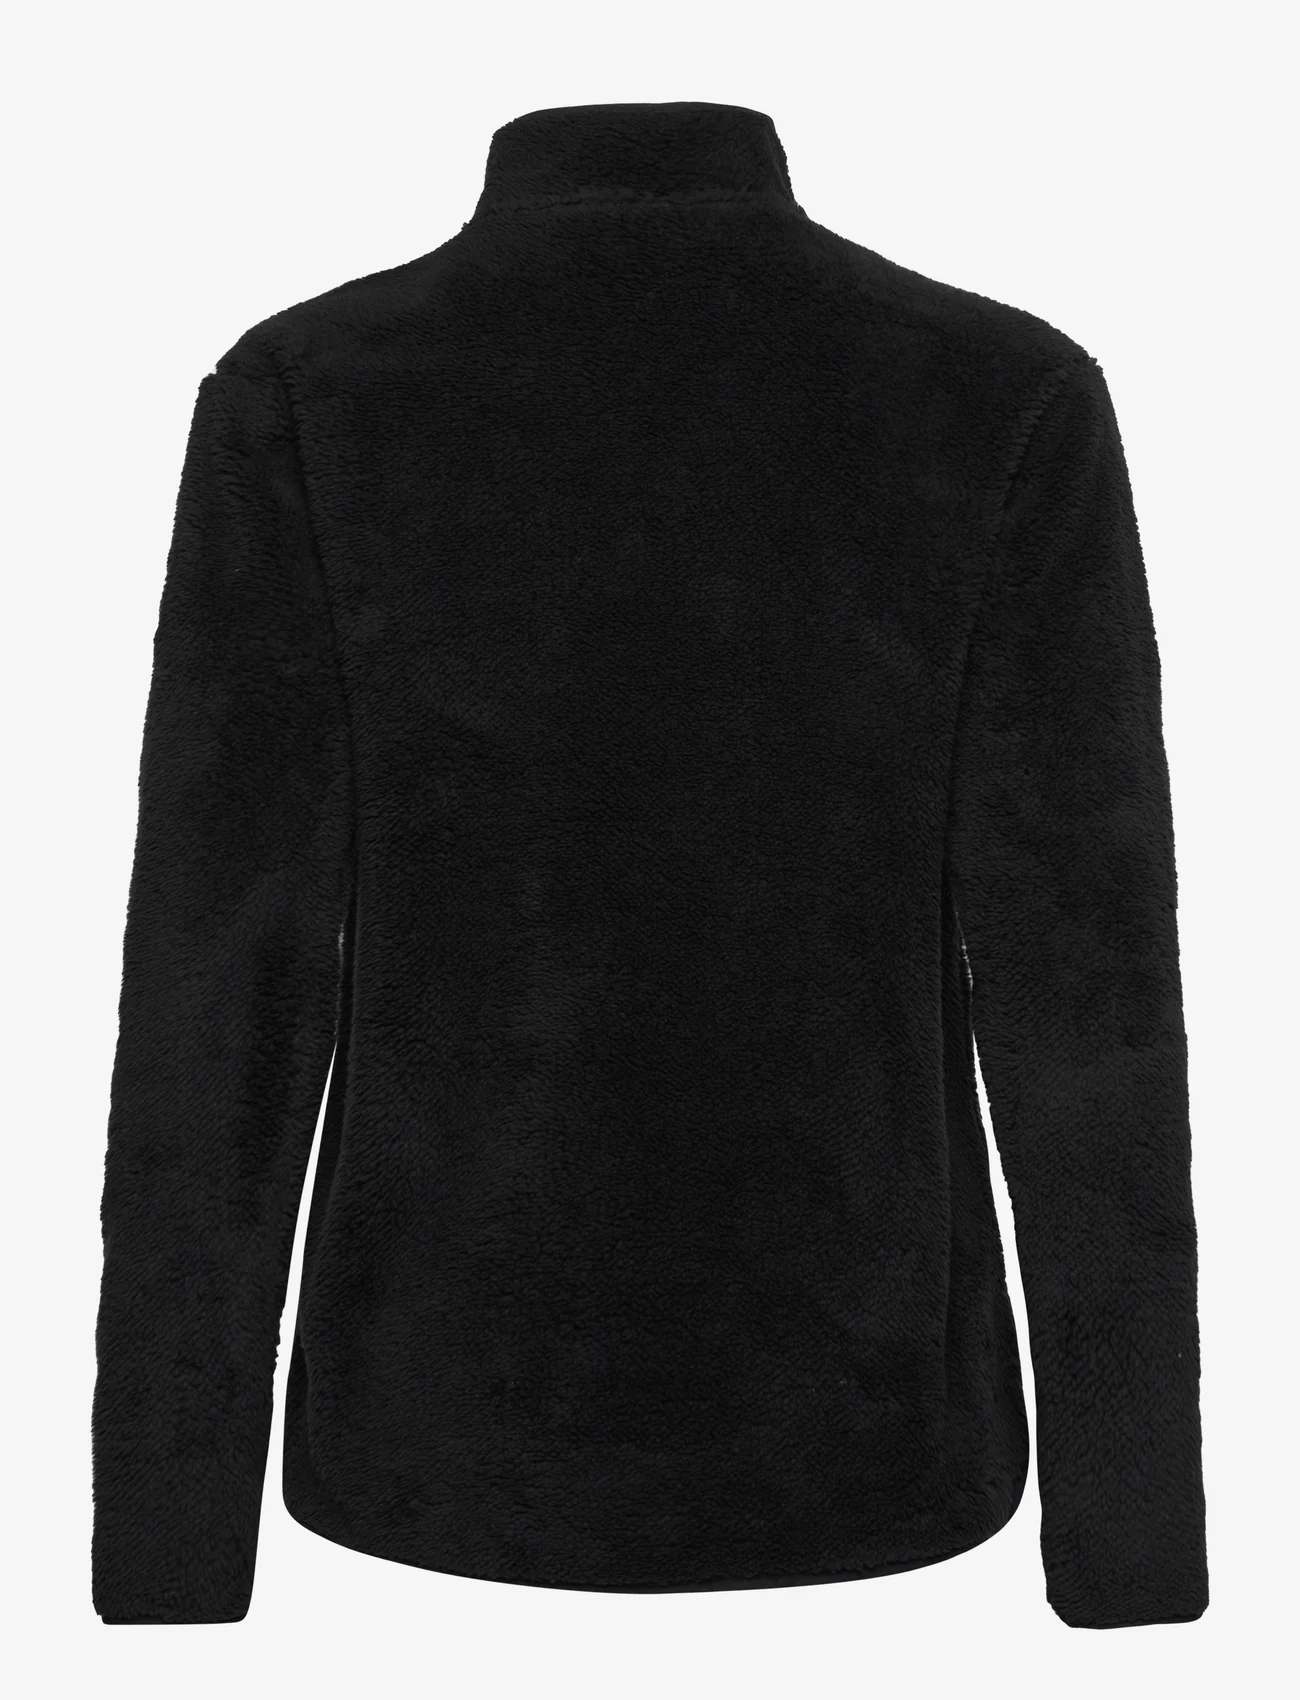 Tenson - Thermal Pile Zip Jacket Women - vesten - black - 1